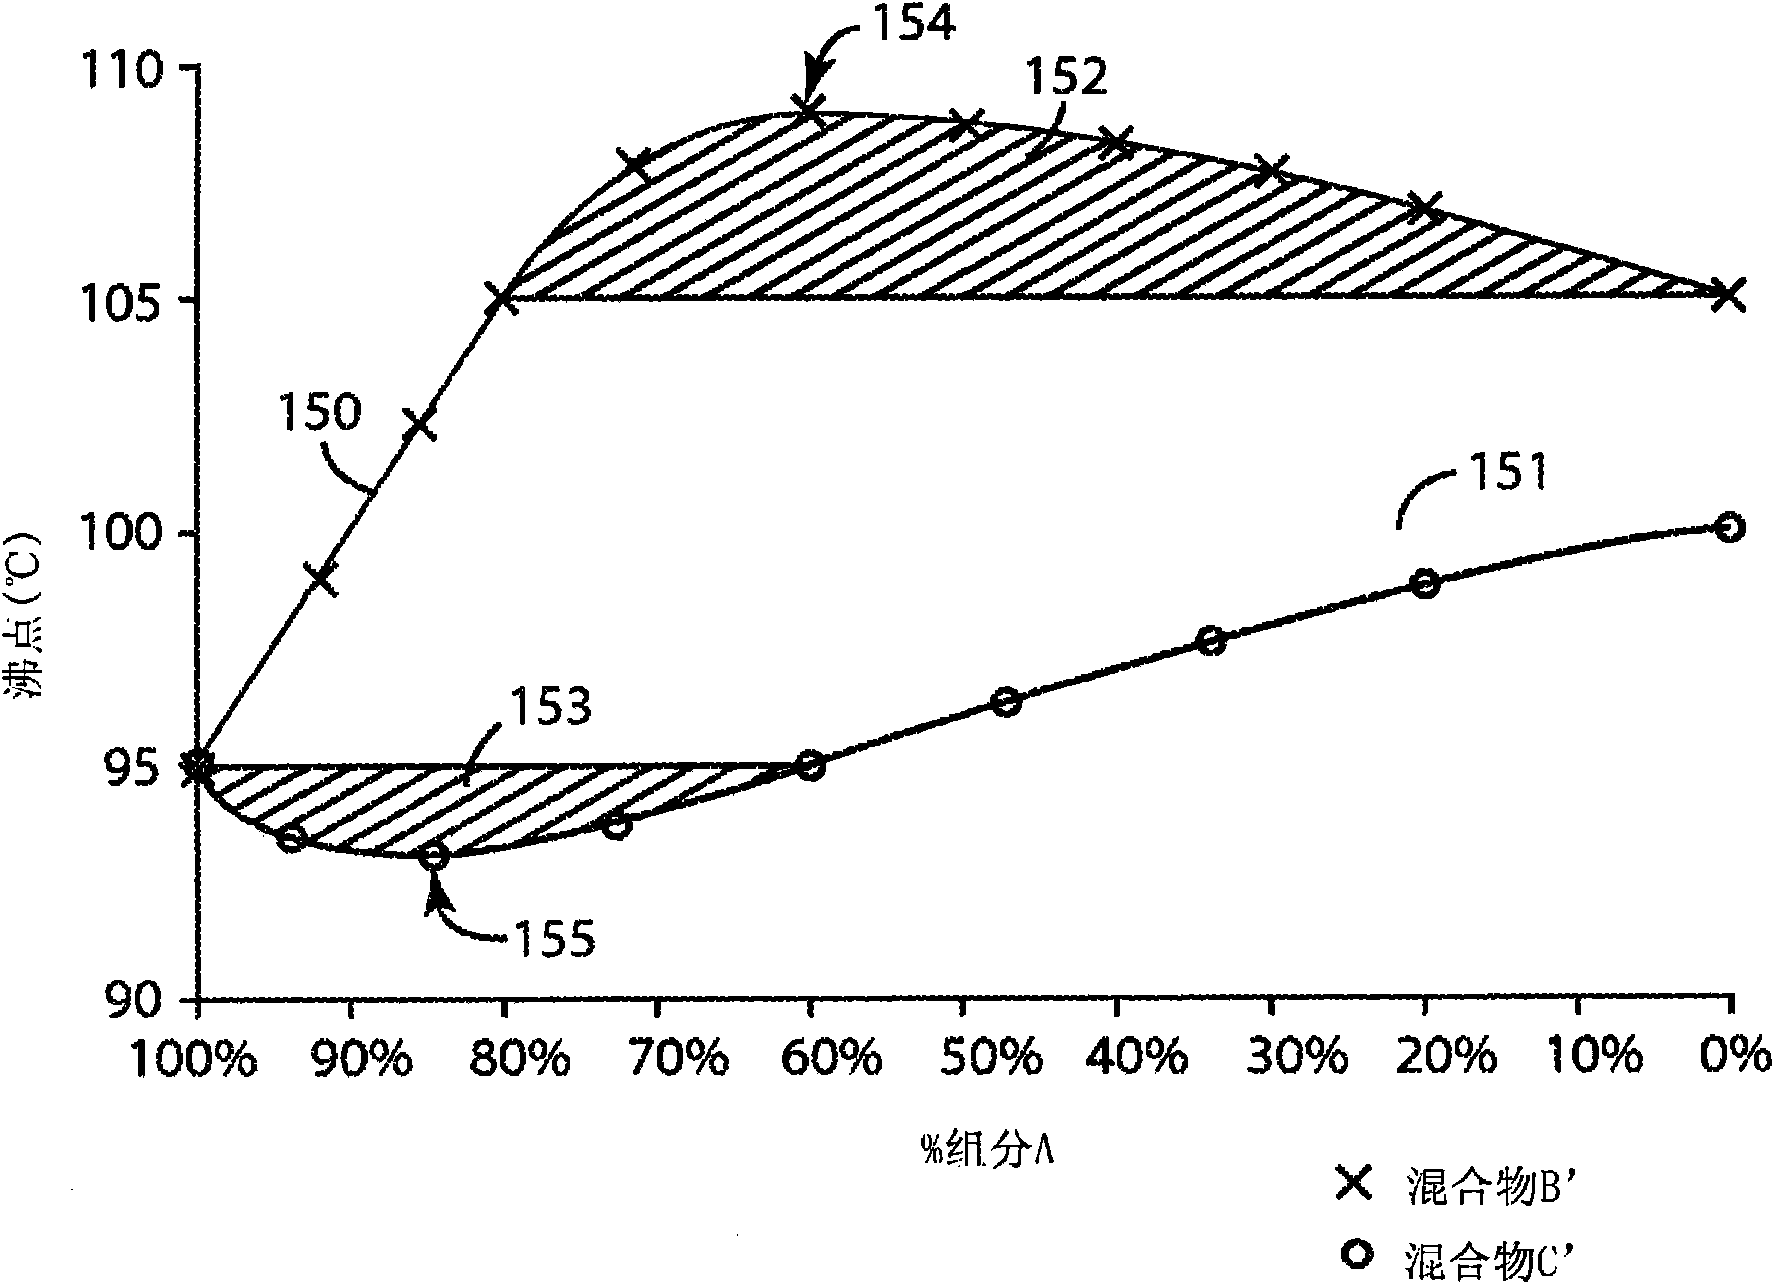 Azeotropic-like compositions with 1,1,1,2,3,3-hexafluoro-3-methoxy-propane and 1-bromopropane